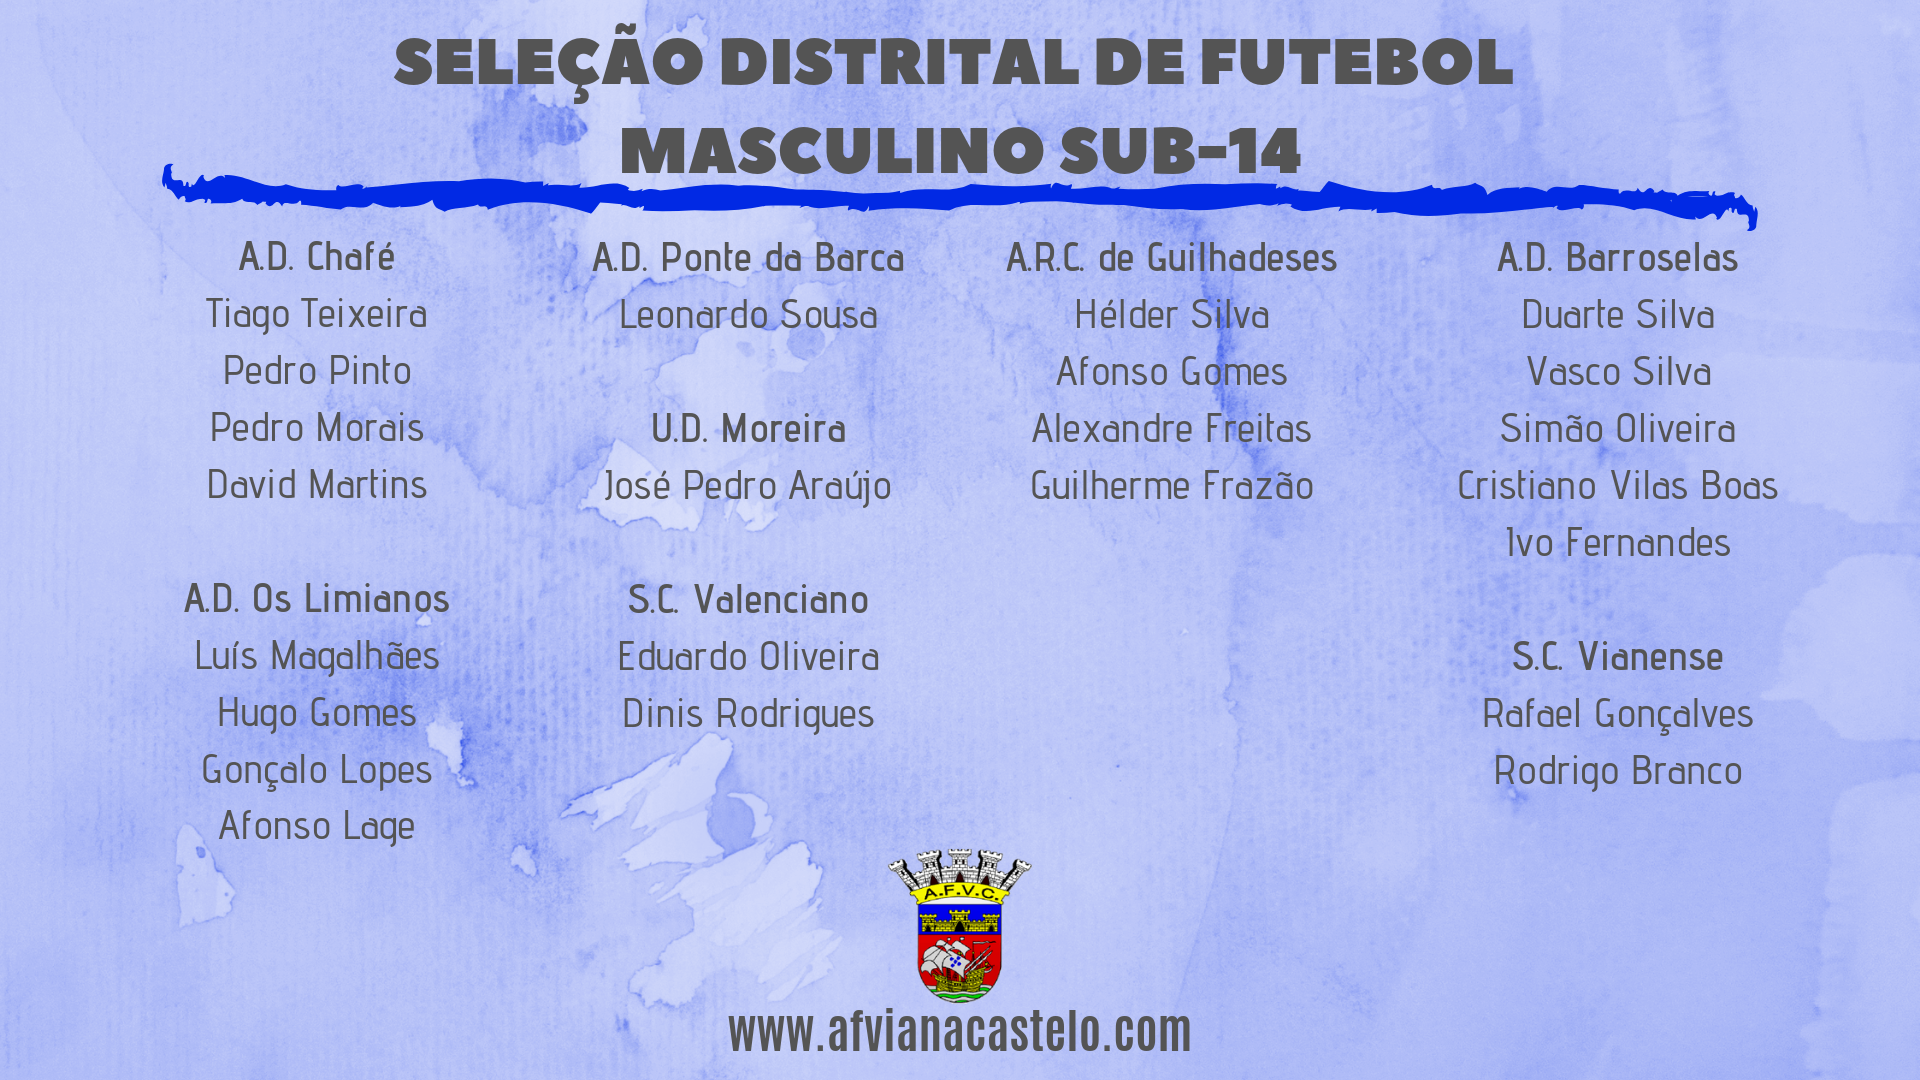 Seleção Distrital de Futebol Masculino Sub-14